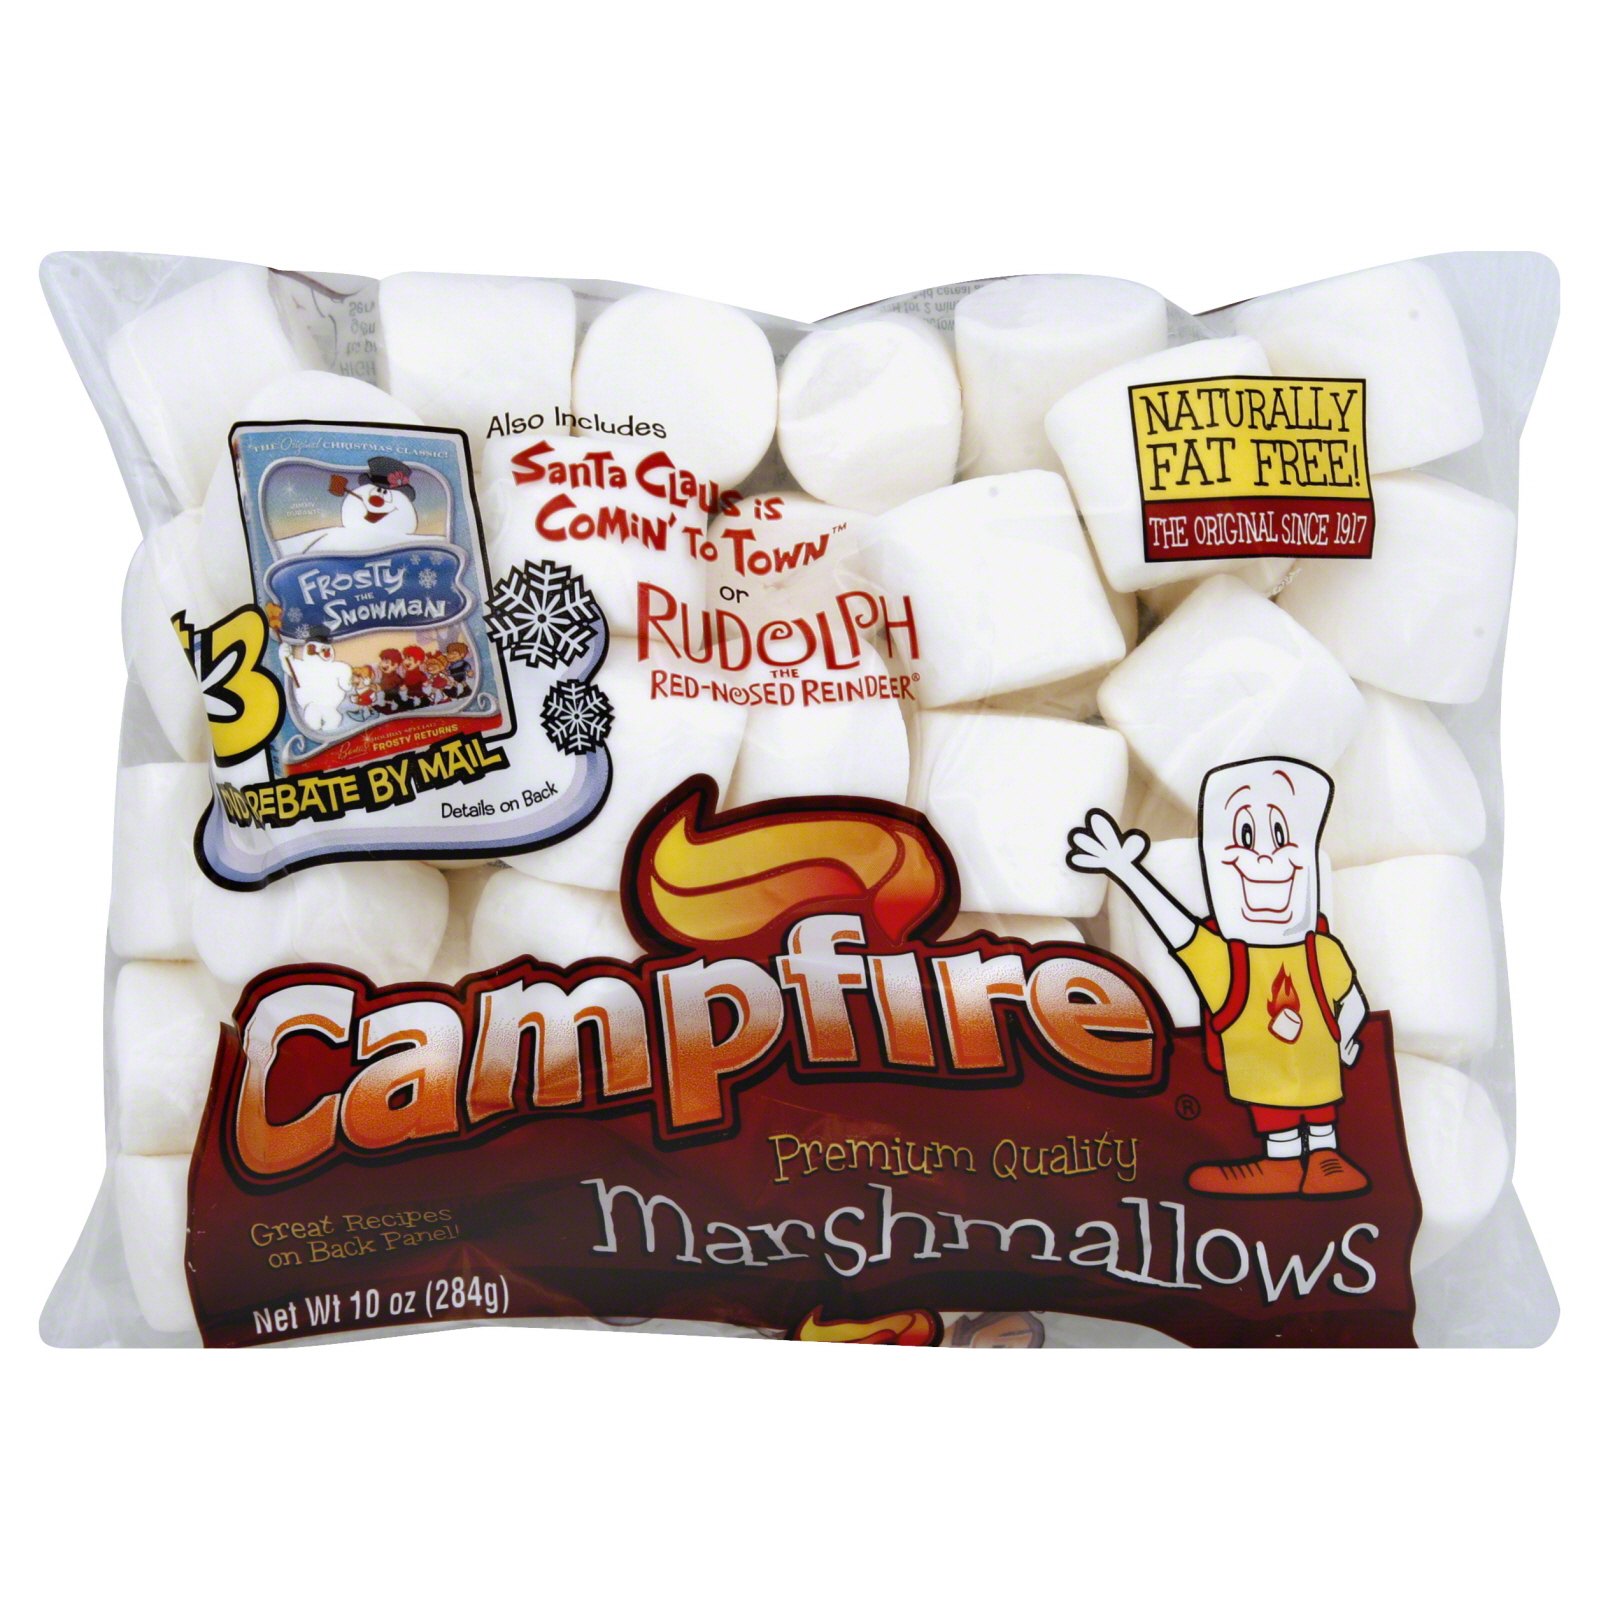 Campfire Marshmallows, 10 oz (284 g)